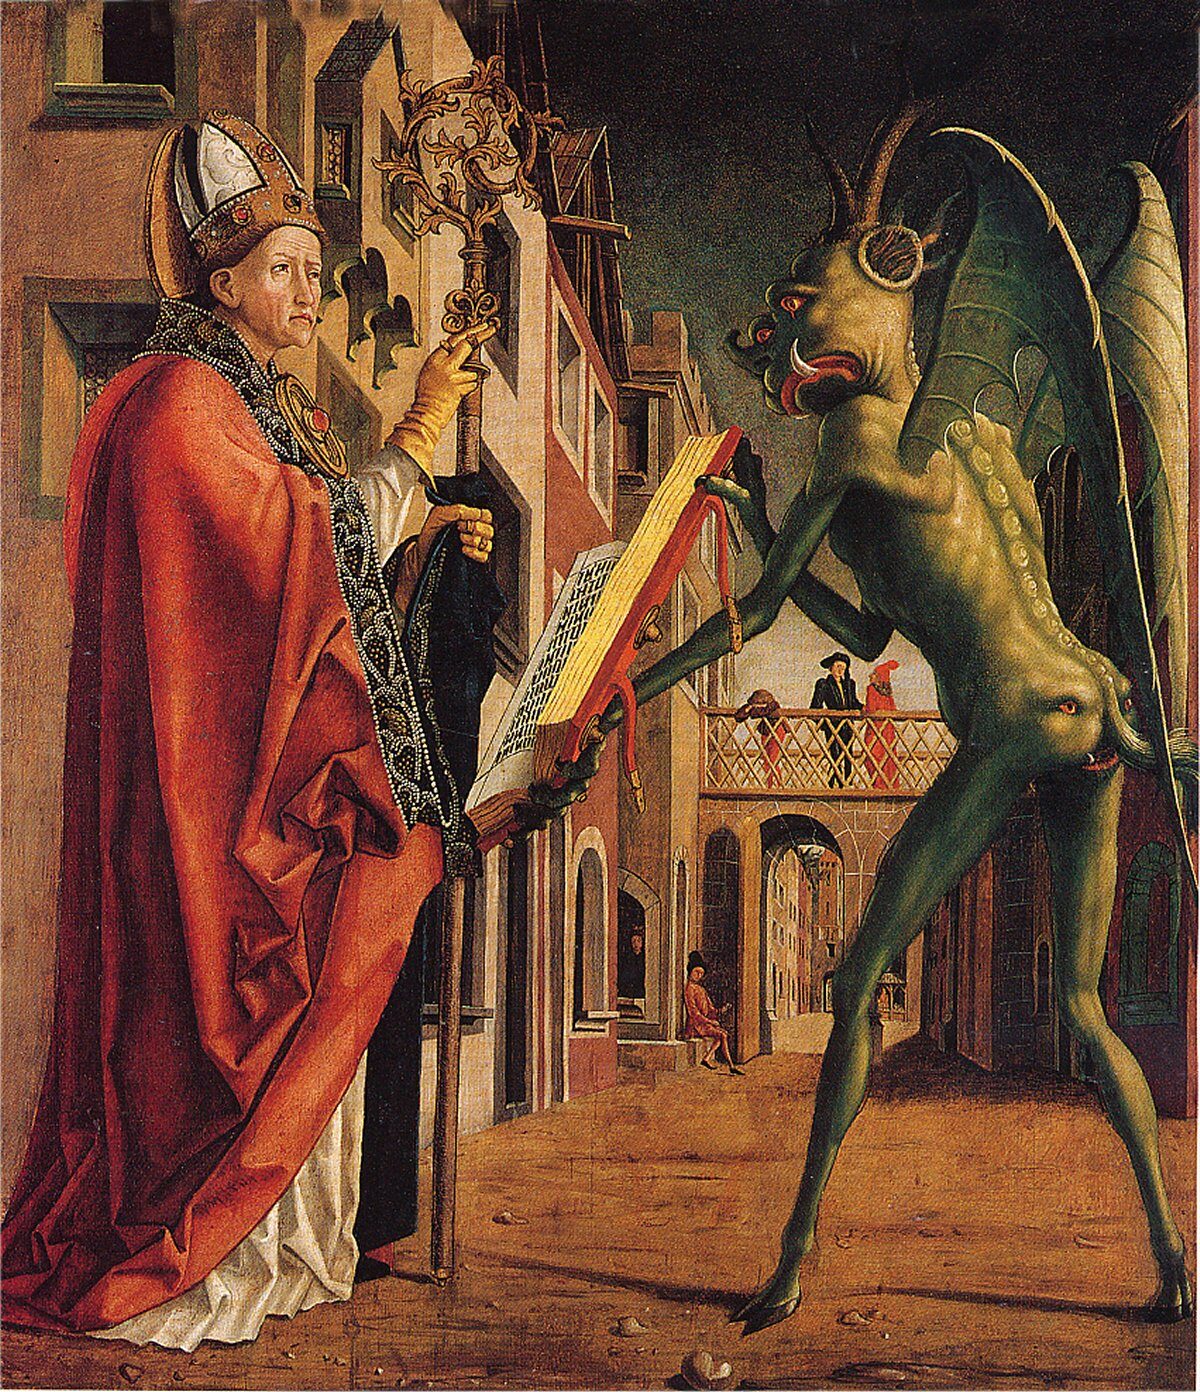 นักบวช ศาสนาคริสต์ กับ ปีศาจ กาย สีเขียว